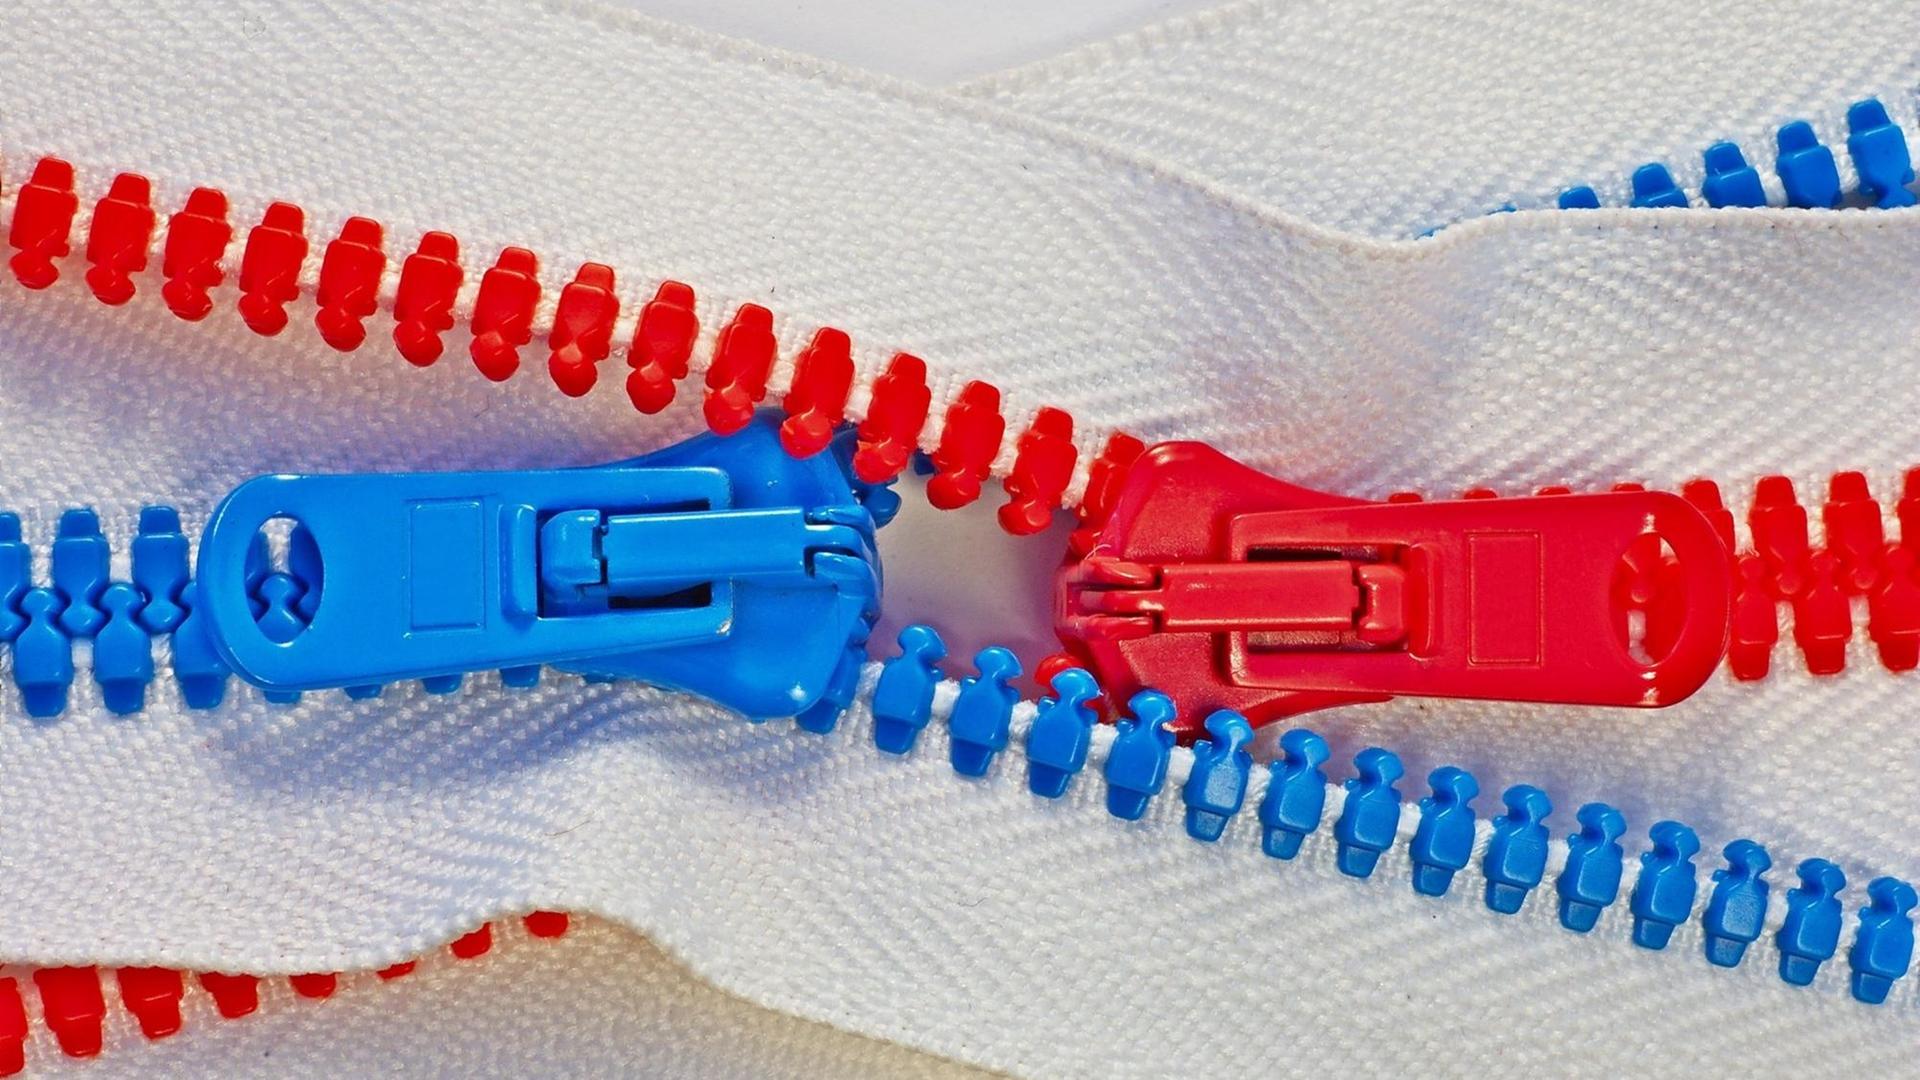 Ein roter und ein blauer Reißverschluss greifen ineinander.